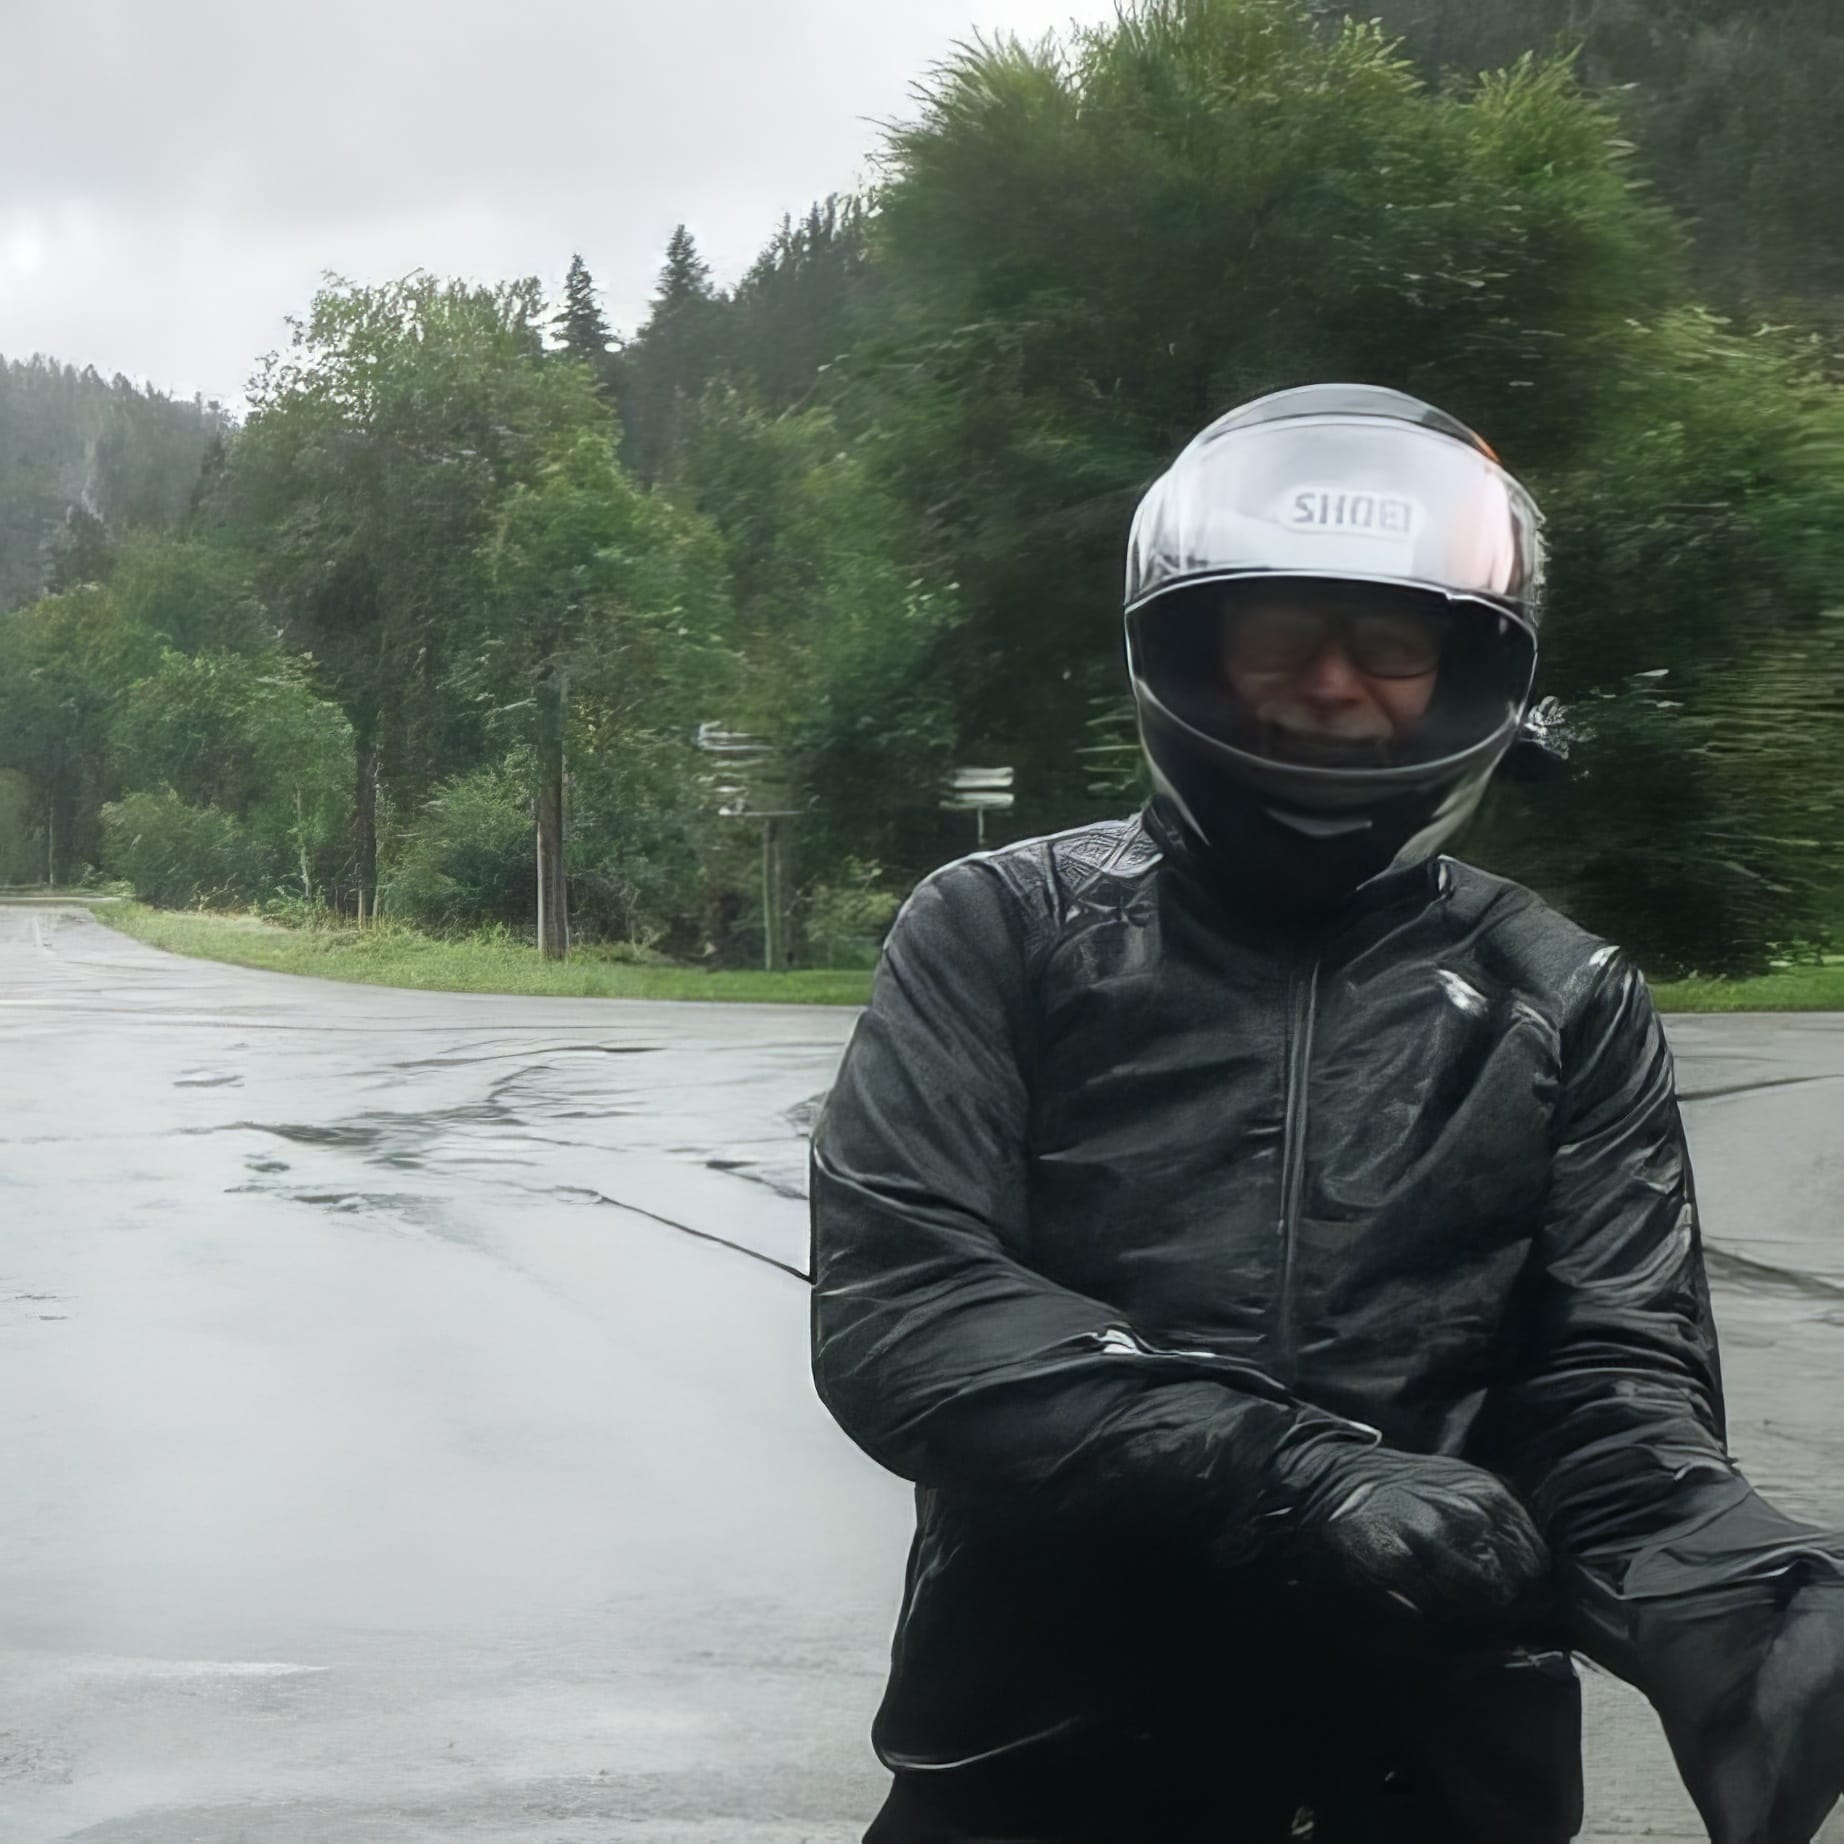 GPT  Das Foto zeigt einen Motorradfahrer in voller Schutzausrüstung. Er trägt einen schwarzen Helm, Jacke und Handschuhe. Der Hintergrund ist verschwommen, aber es scheint, als stünde der Fahrer auf einer nassen Straße, umgeben von grüner Vegetation, was auf regnerisches Wetter hindeutet. 